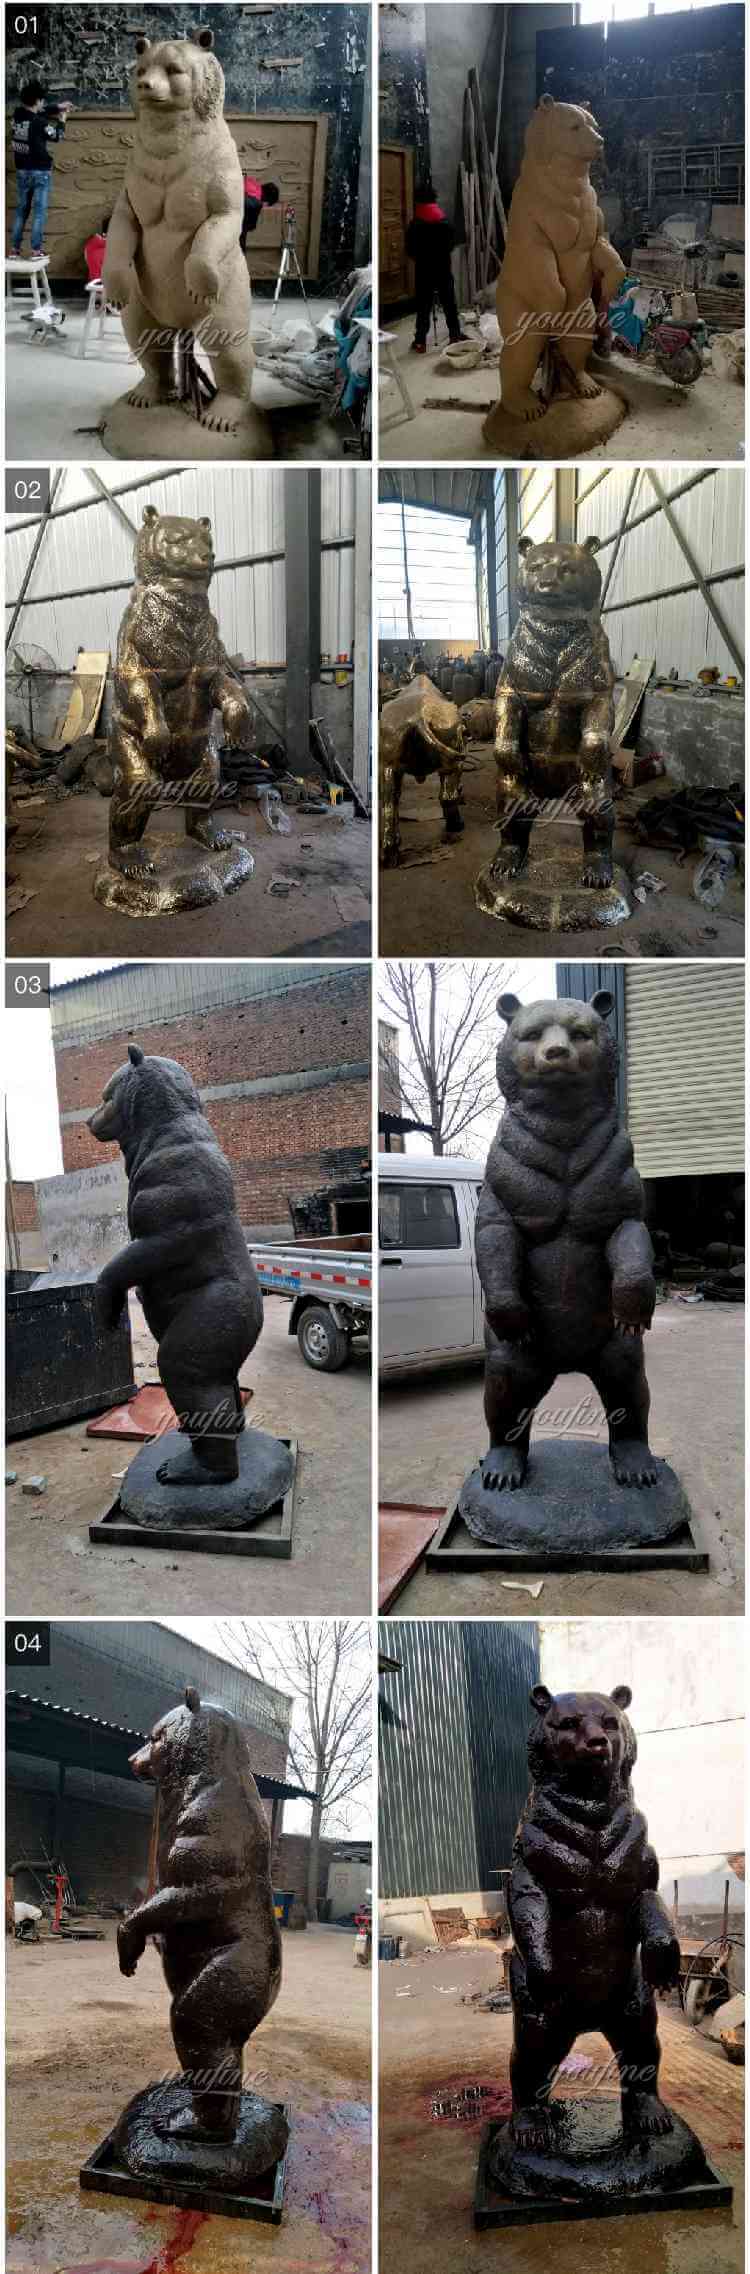 Three bronze bear group sculptures